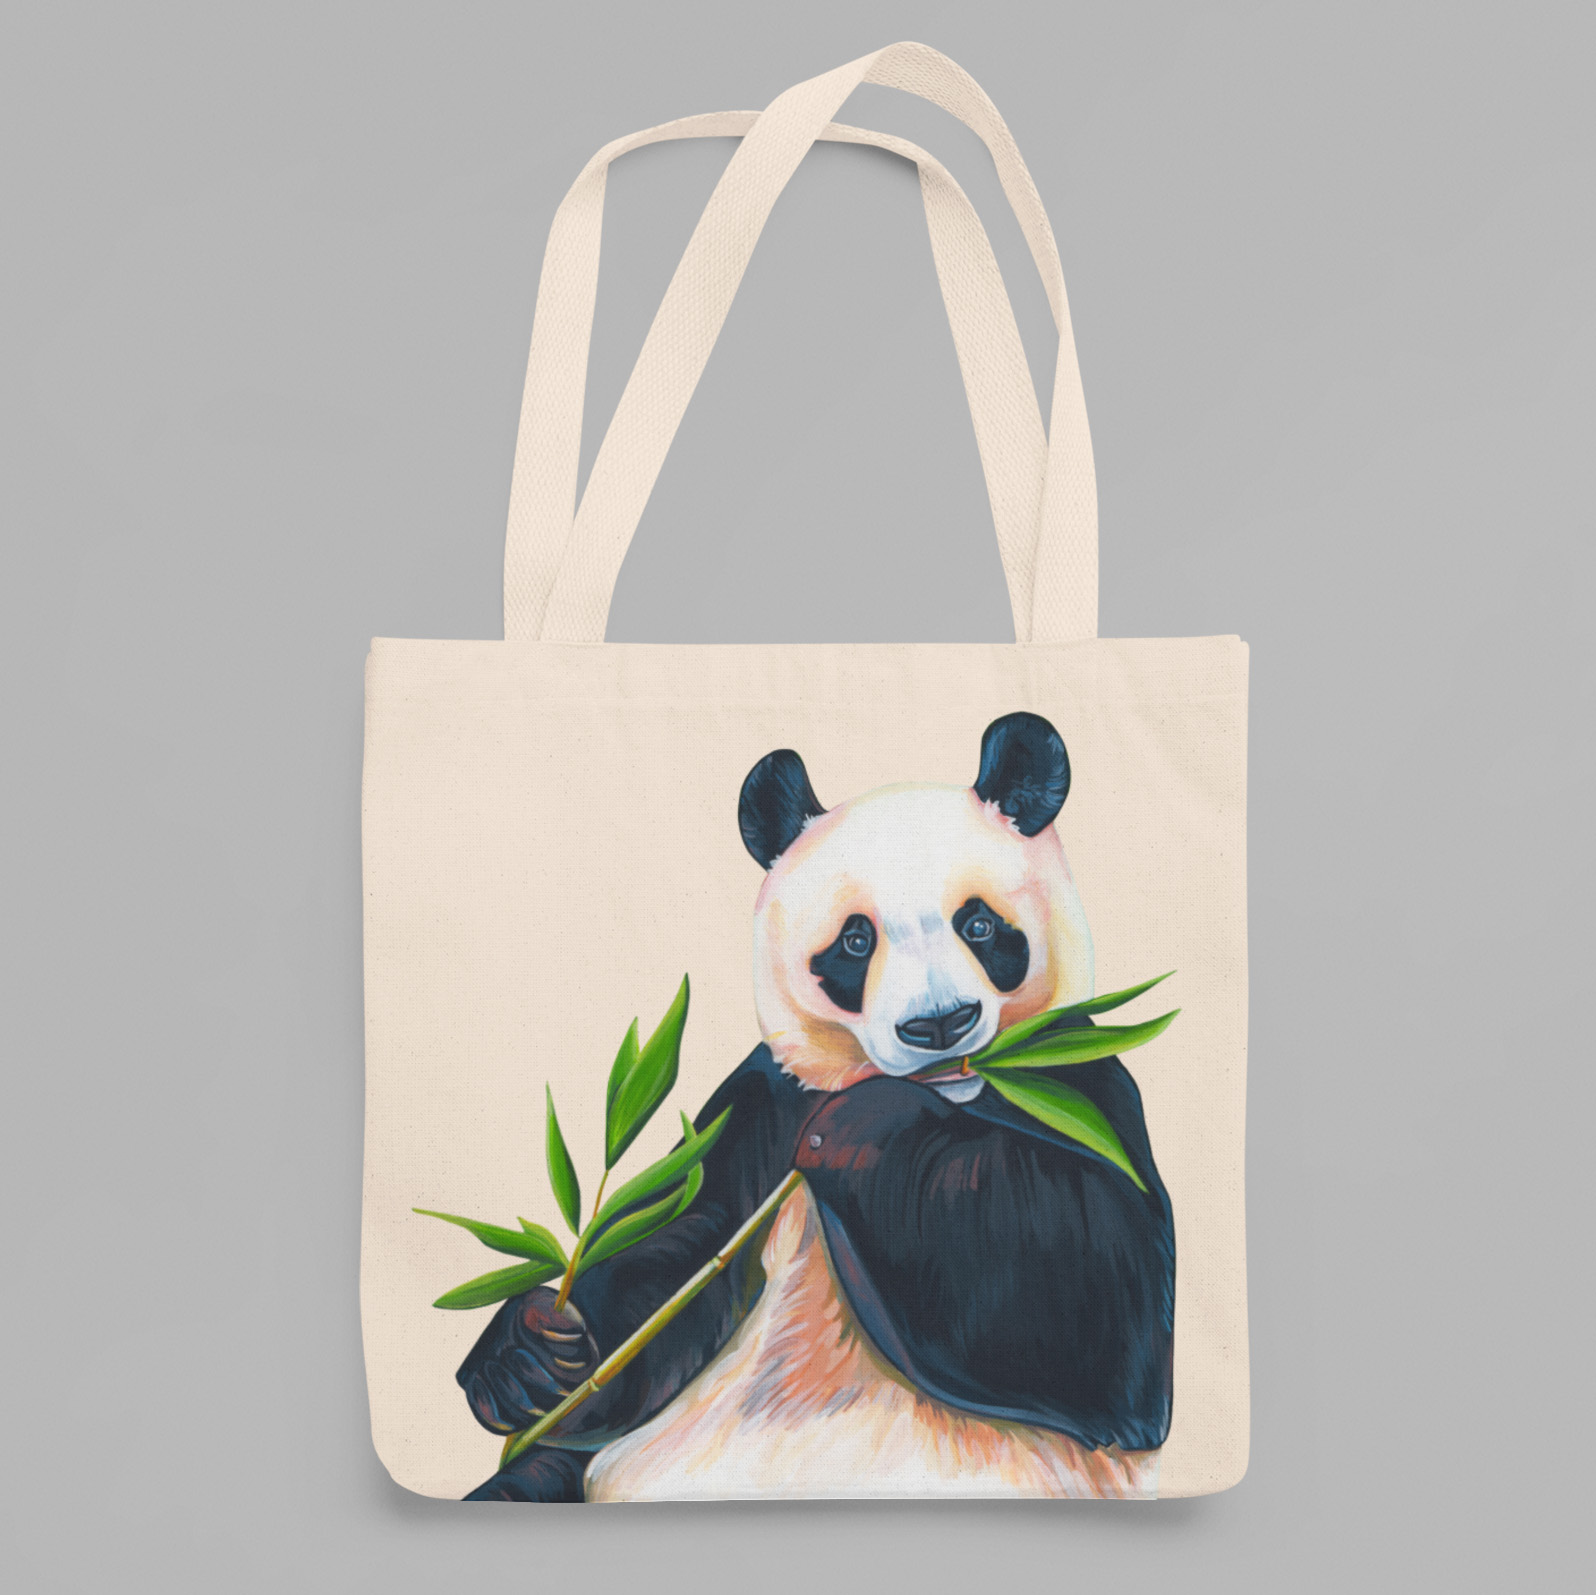 50 Wholesale Giant Panda Bear Tote Bags, Canvas Tote Bags, Bulk Buy Totes, Job Lot, Surplus stock